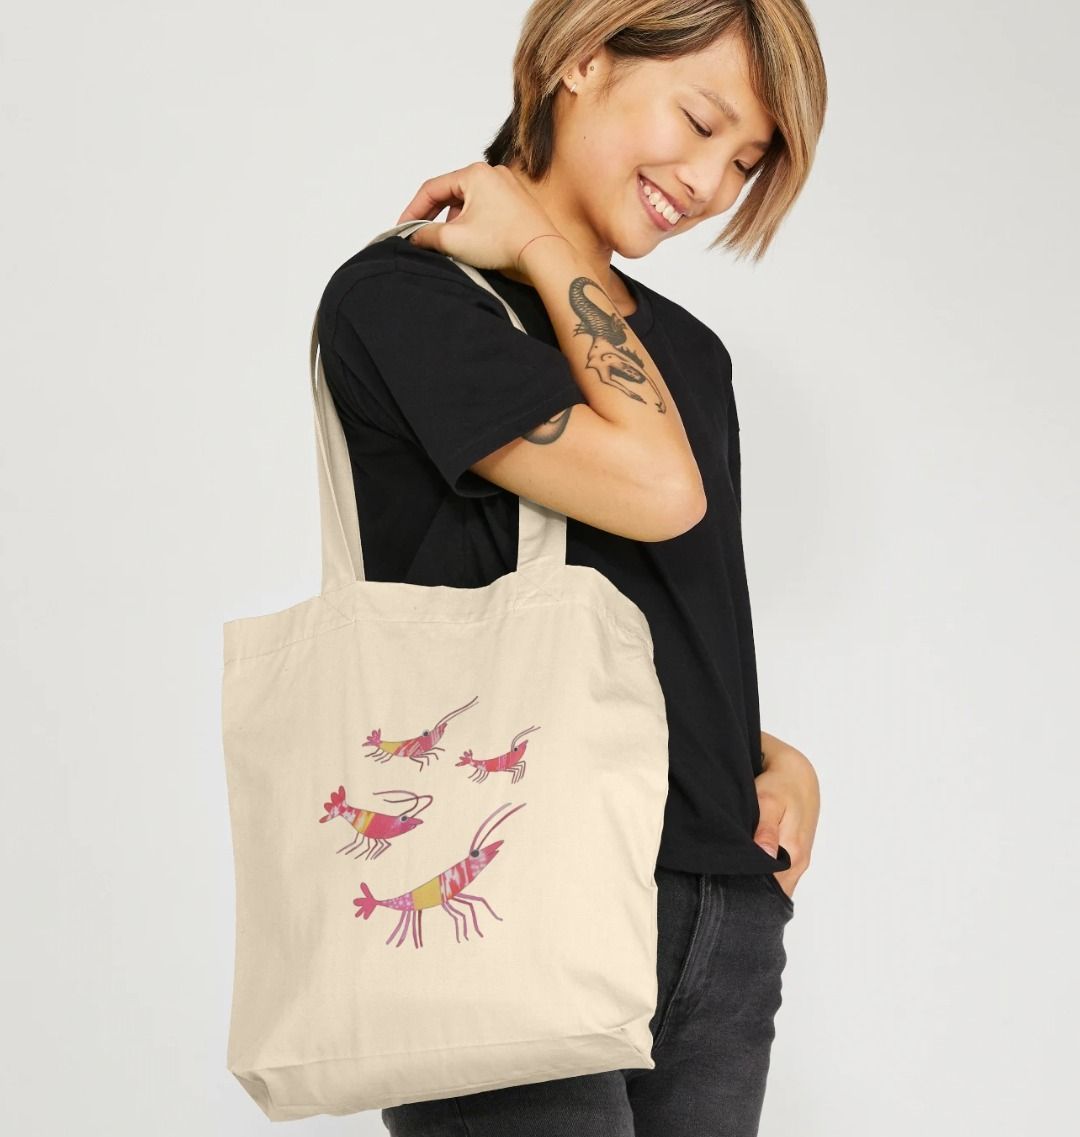 prawn party organic tote bag - Printed Bag - Sarah Millin